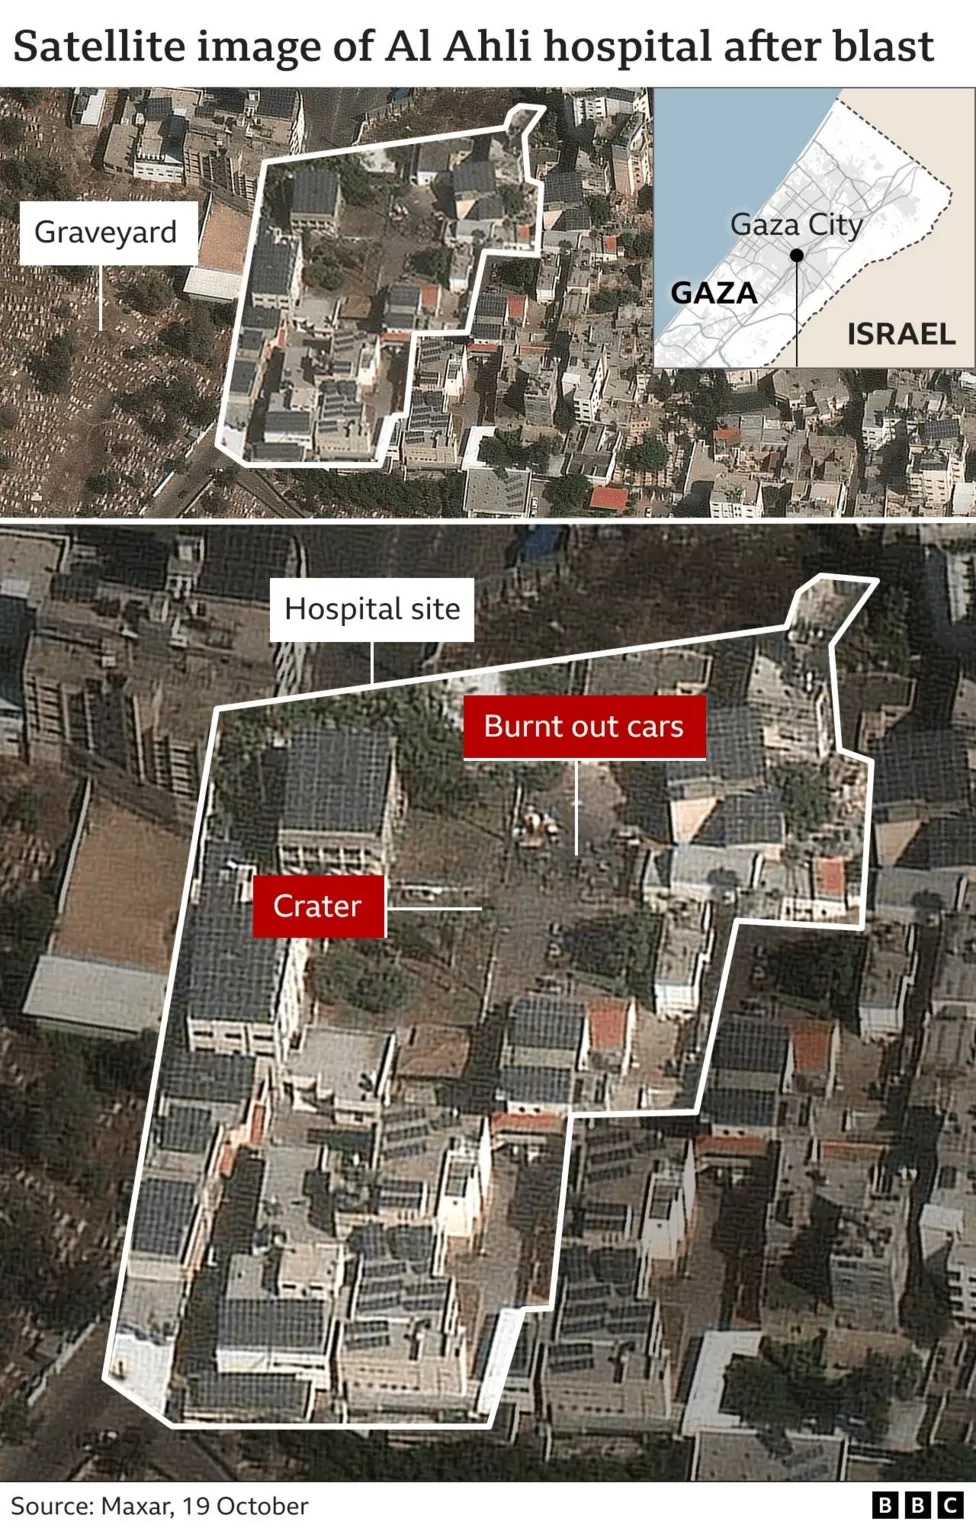 Нью-Йорк Таймс признала свою неправоту по больнице в Газе